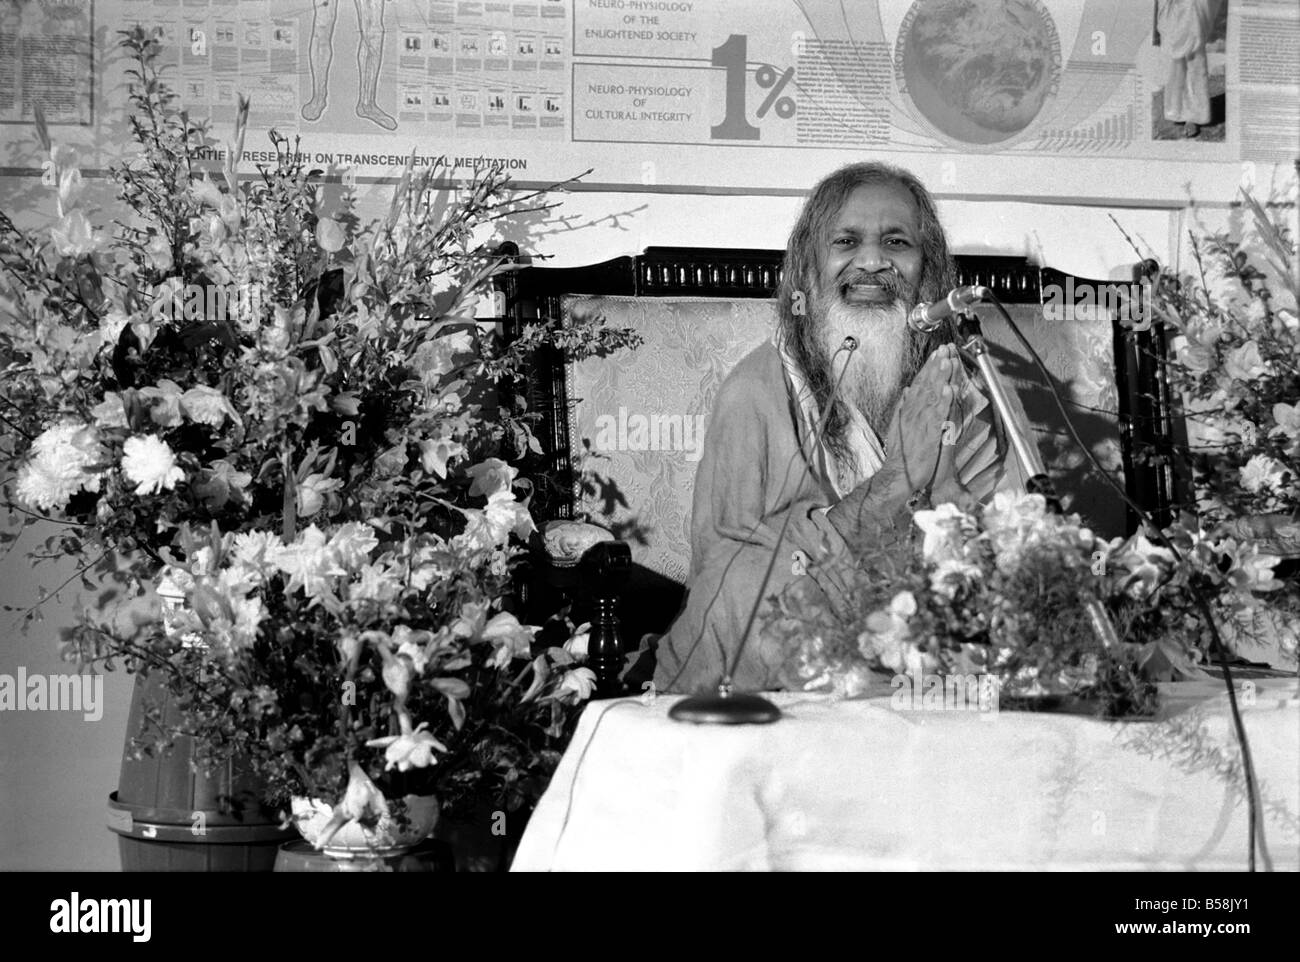 Le Maharishi est de retour en ville. Mars 1975 75-01534 Maharishi Mahesh Yogi, fondateur du programme de Méditation Transcendantale. Banque D'Images